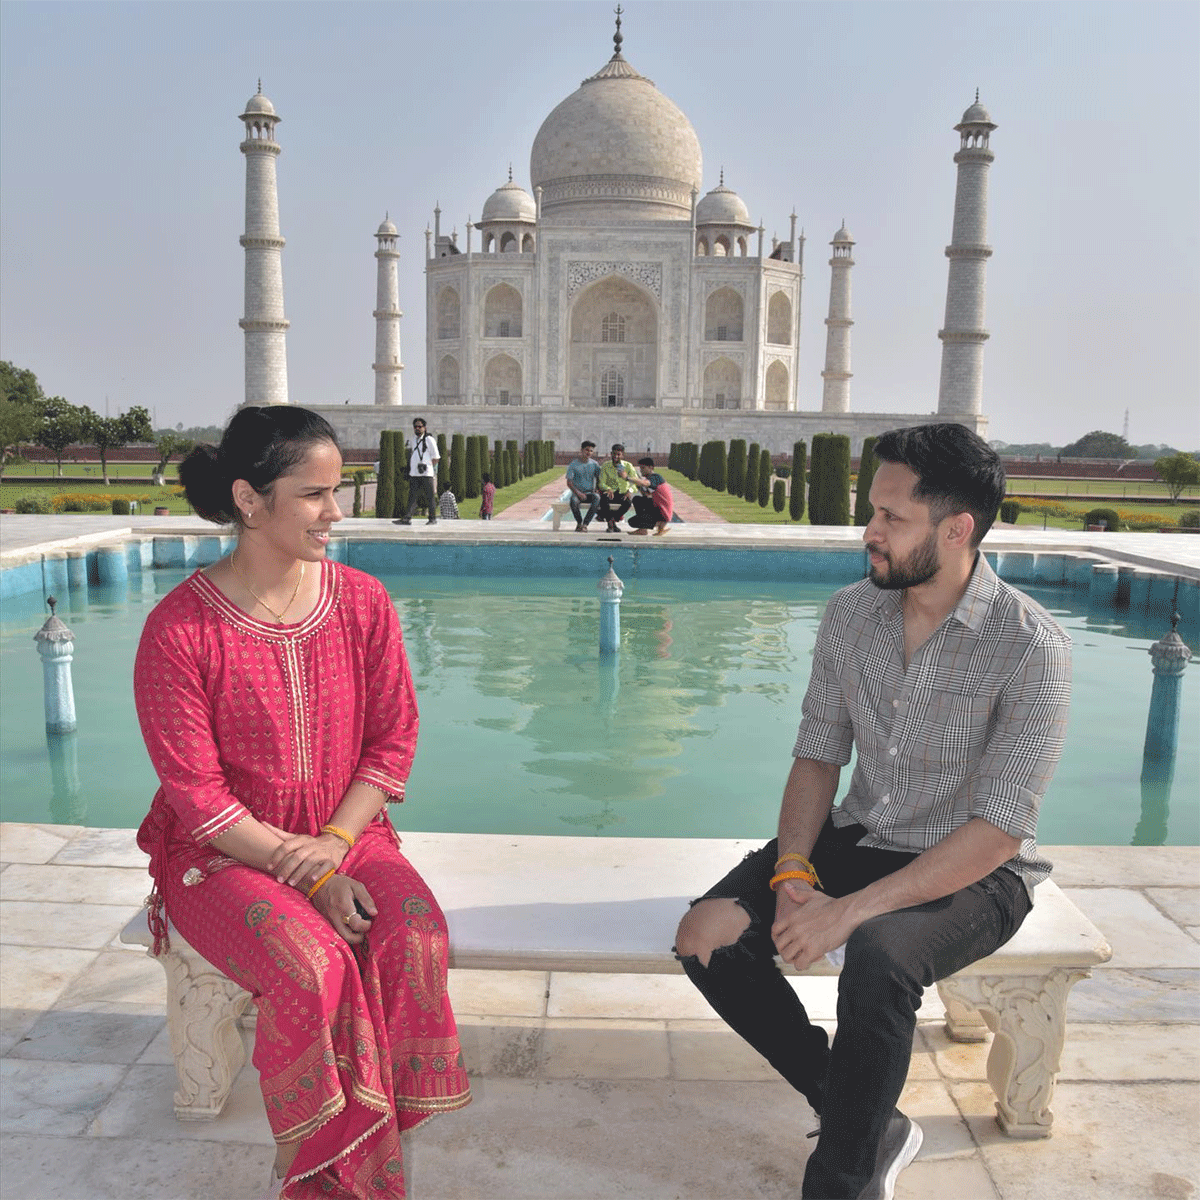 Saina Nehwal and her husband P Kashyap at the Taj Mahal